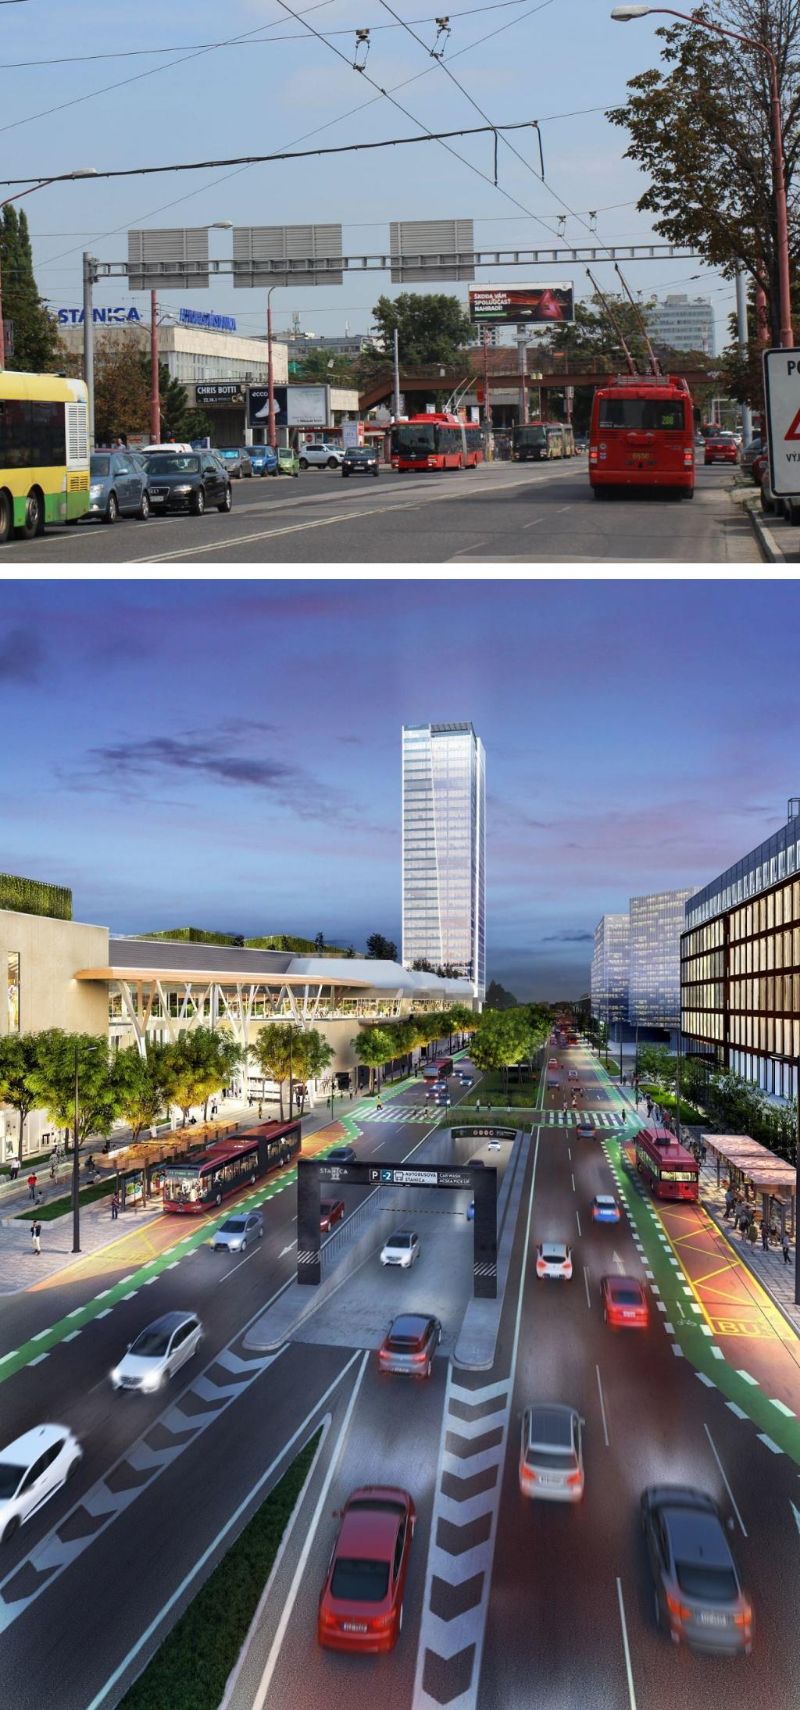 oben: Blick in die Straße Mlynské nivy im September 2015, links der ehemalige Autobusbahnhof. Aufnahme: J. Lehmann  // unten: Planung der Straße nach Fertigstellung der Neubauten, aus: